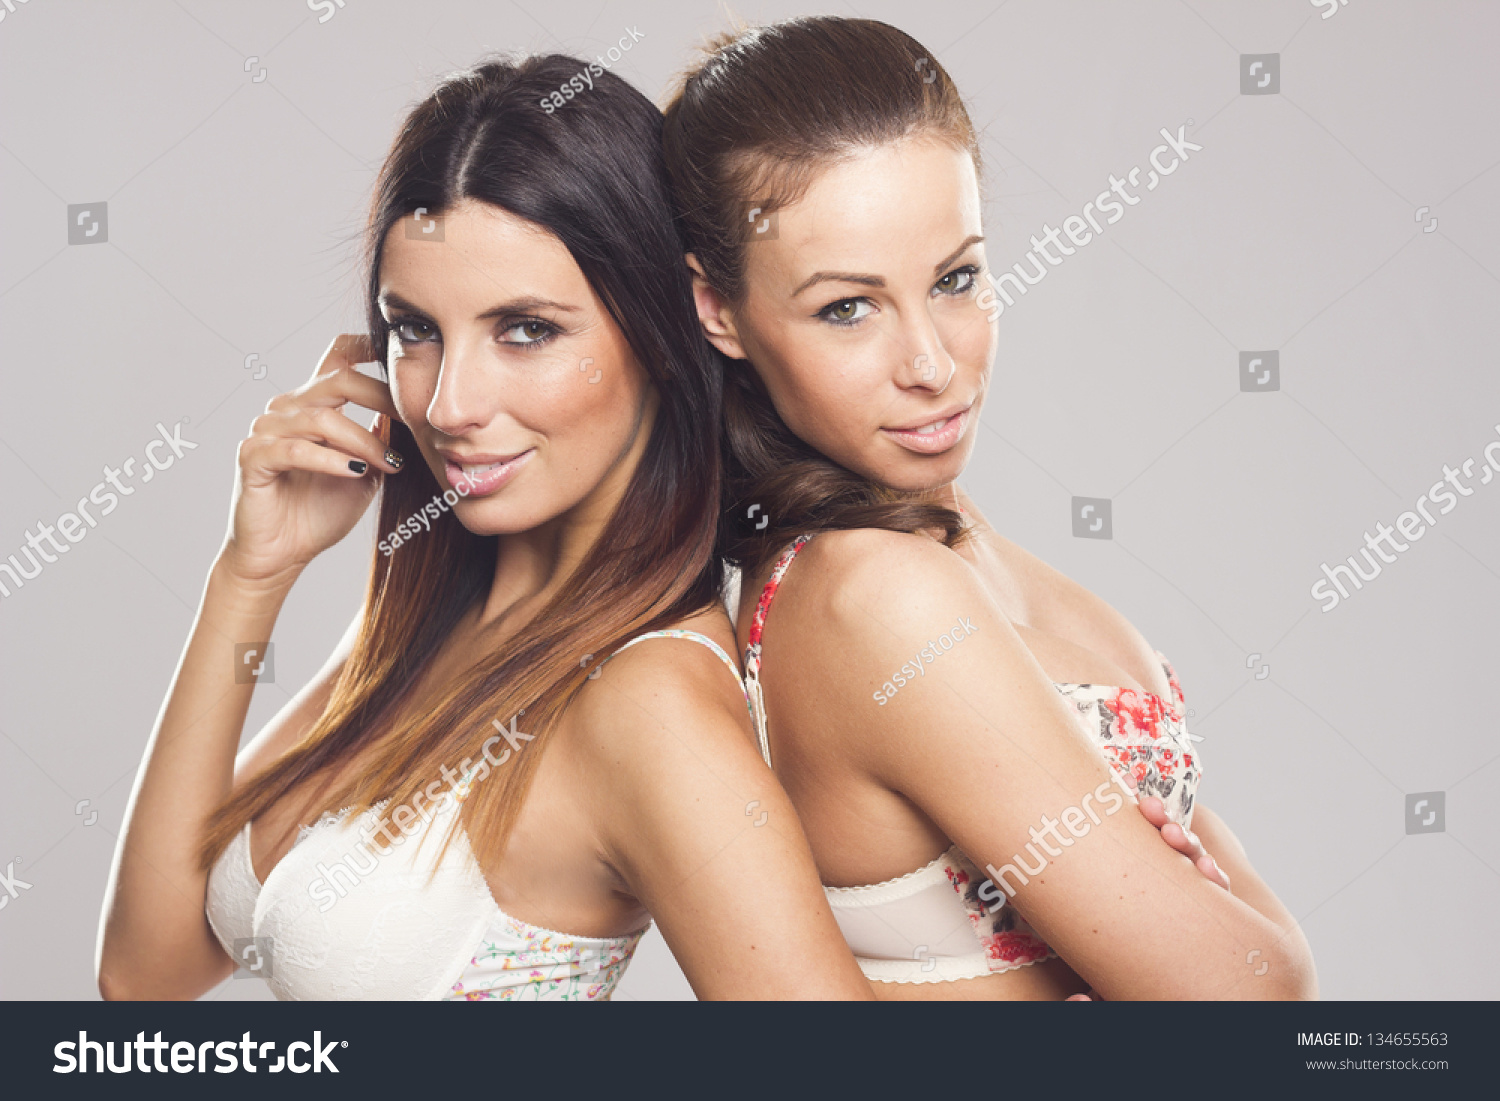 Lesbian Glamour Pics